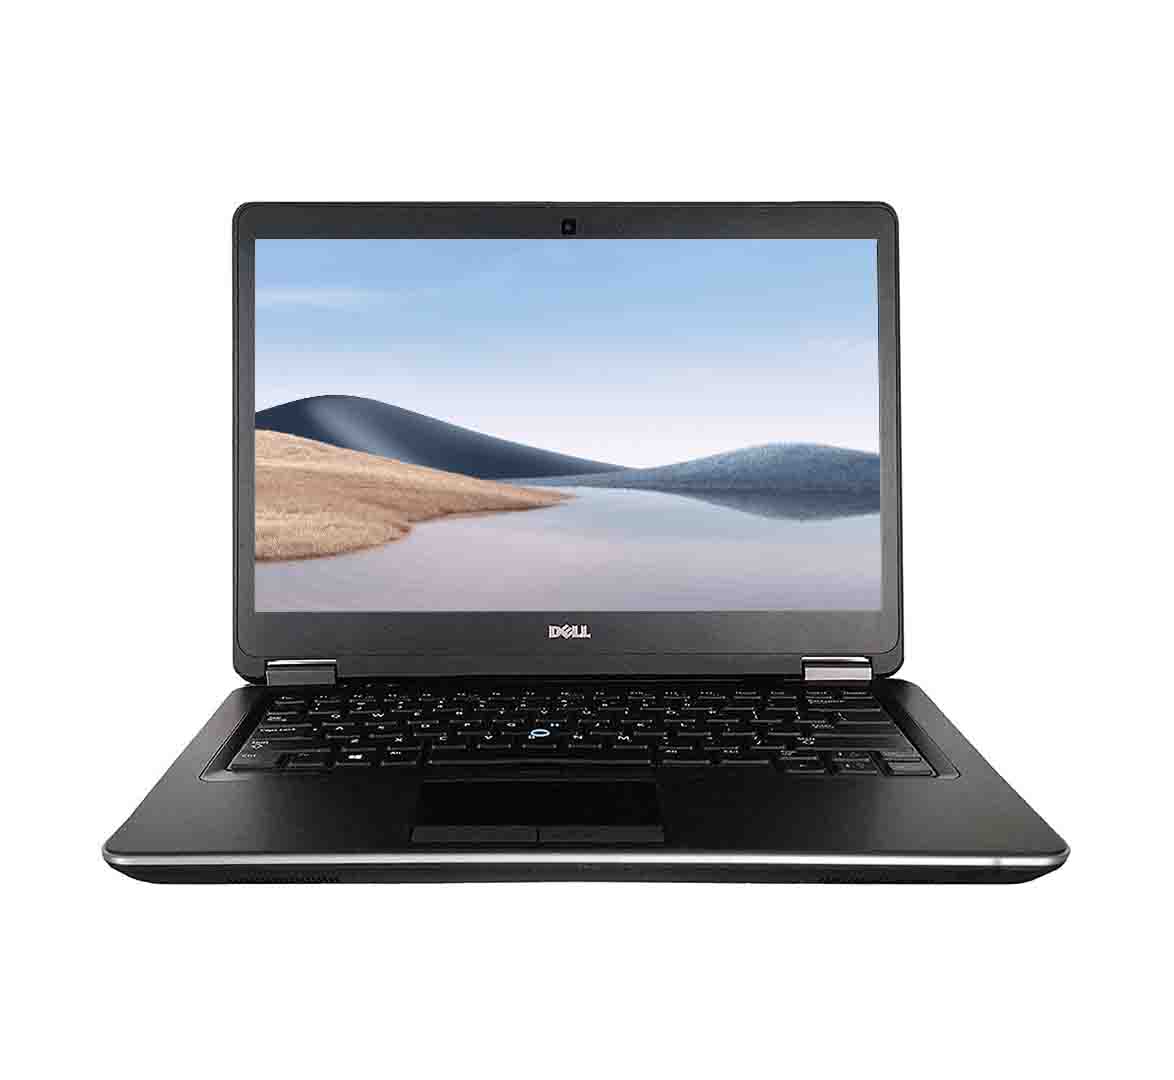 Dell Latitude E7440 Business Laptop, Intel Core i5-4th Gen. CPU, 8GB RAM, 256GB SSD, 14 inch Display, Windows 10 Pro